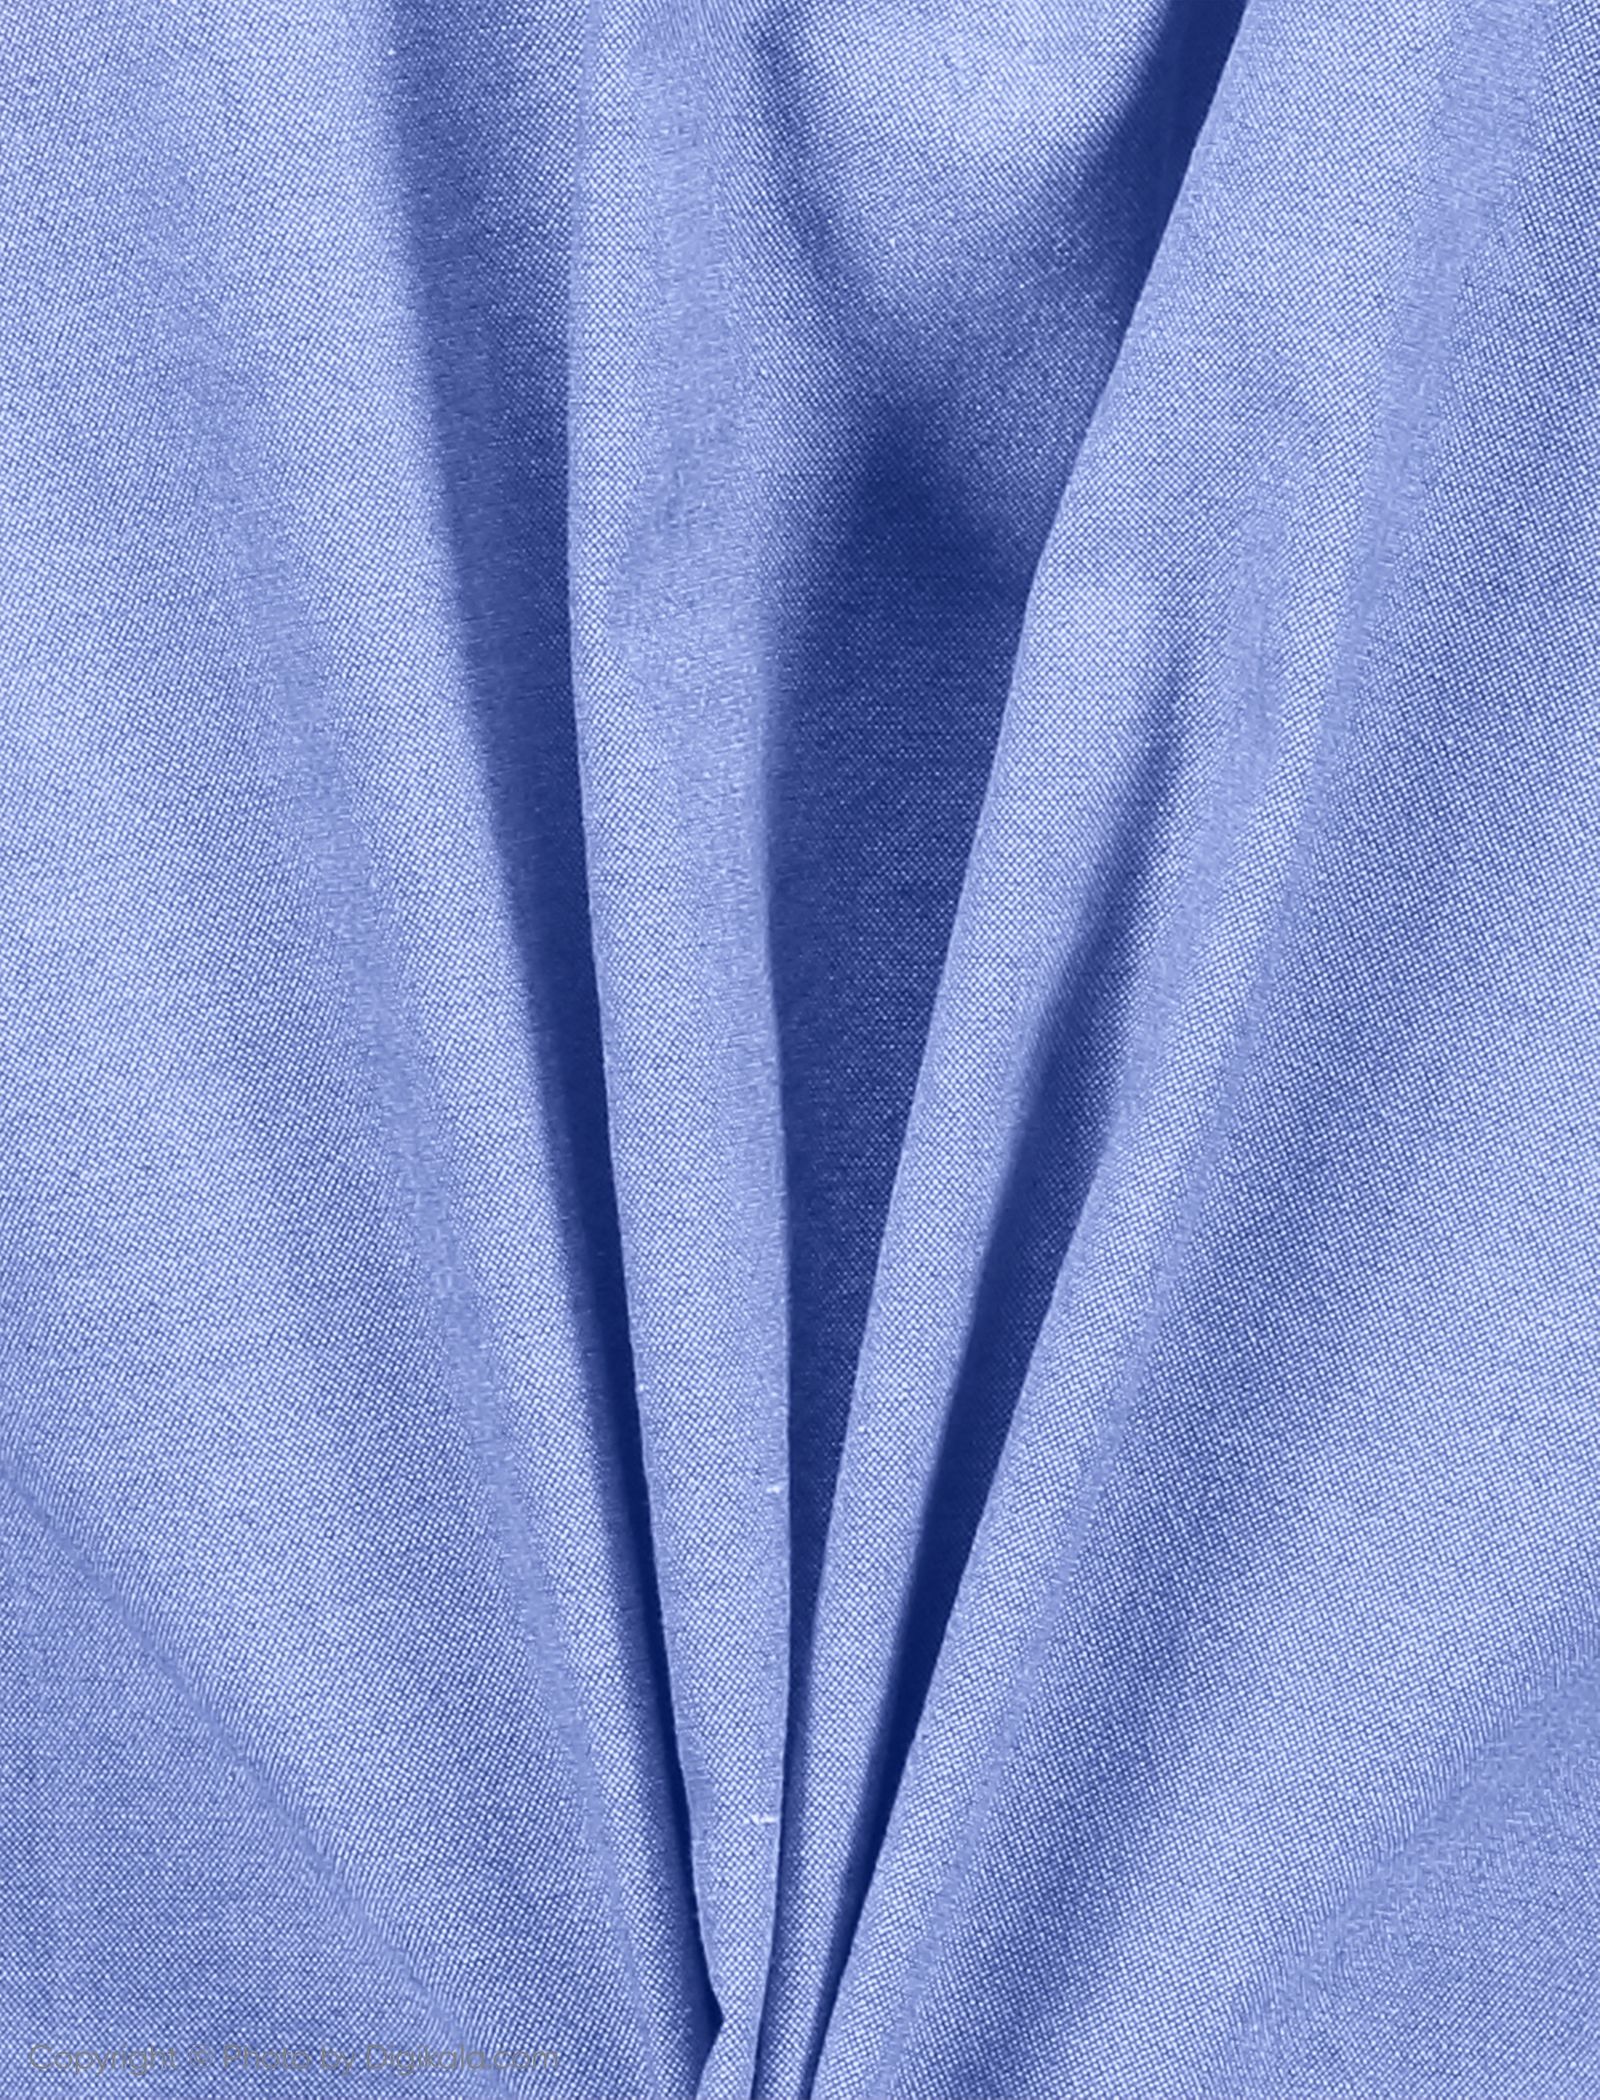 پیراهن مردانه لرد آرچر مدل 200114757 - آبی - 4